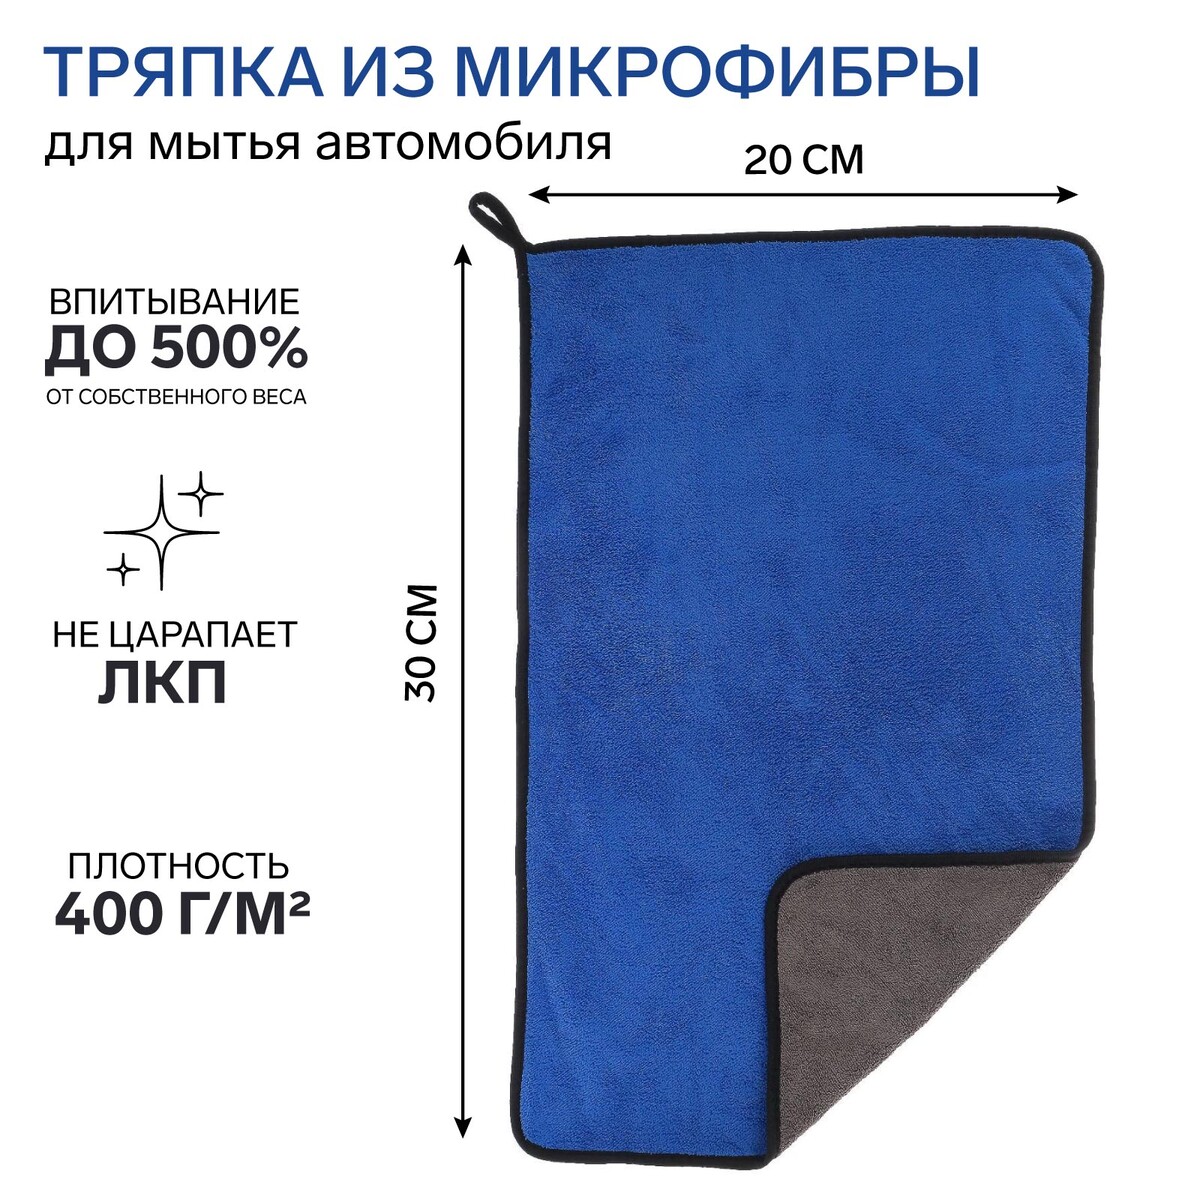 Тряпка для мытья авто, cartage, микрофибра, 400 г/м², 40×60 cм, сине-серая